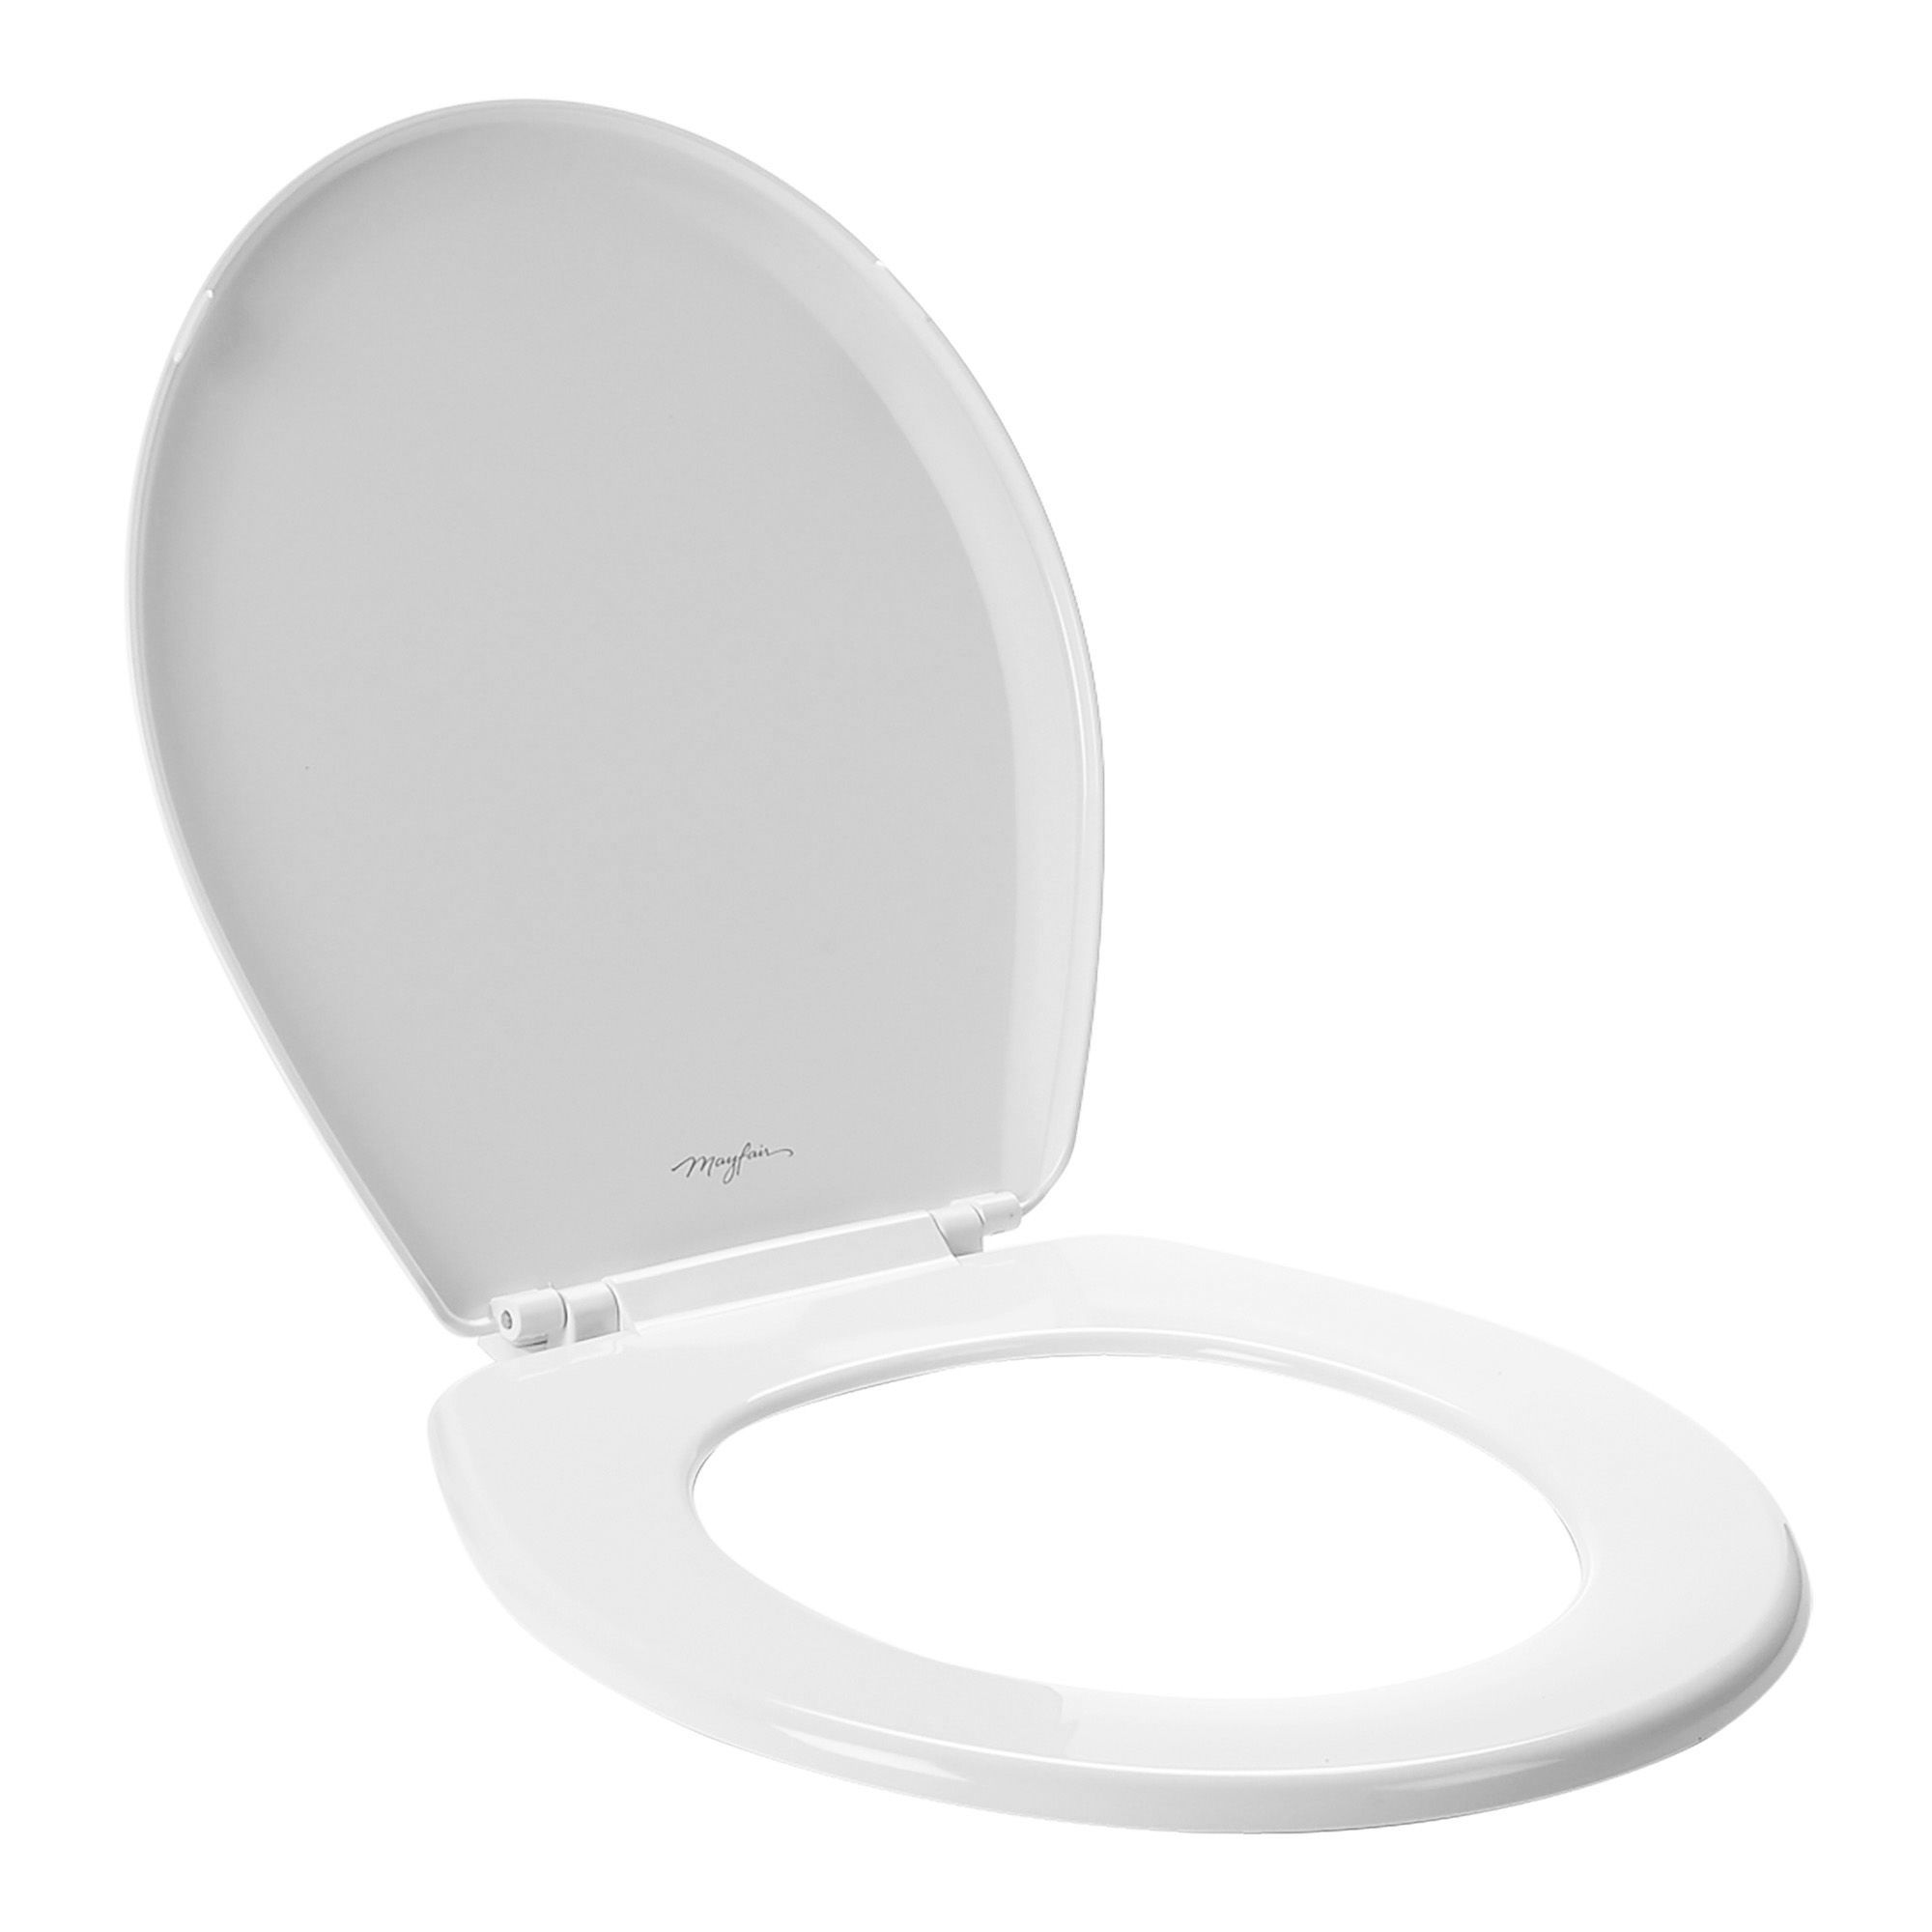 Siège de toilette rond en plastique Econo, blanc, 14.31 x 15.13